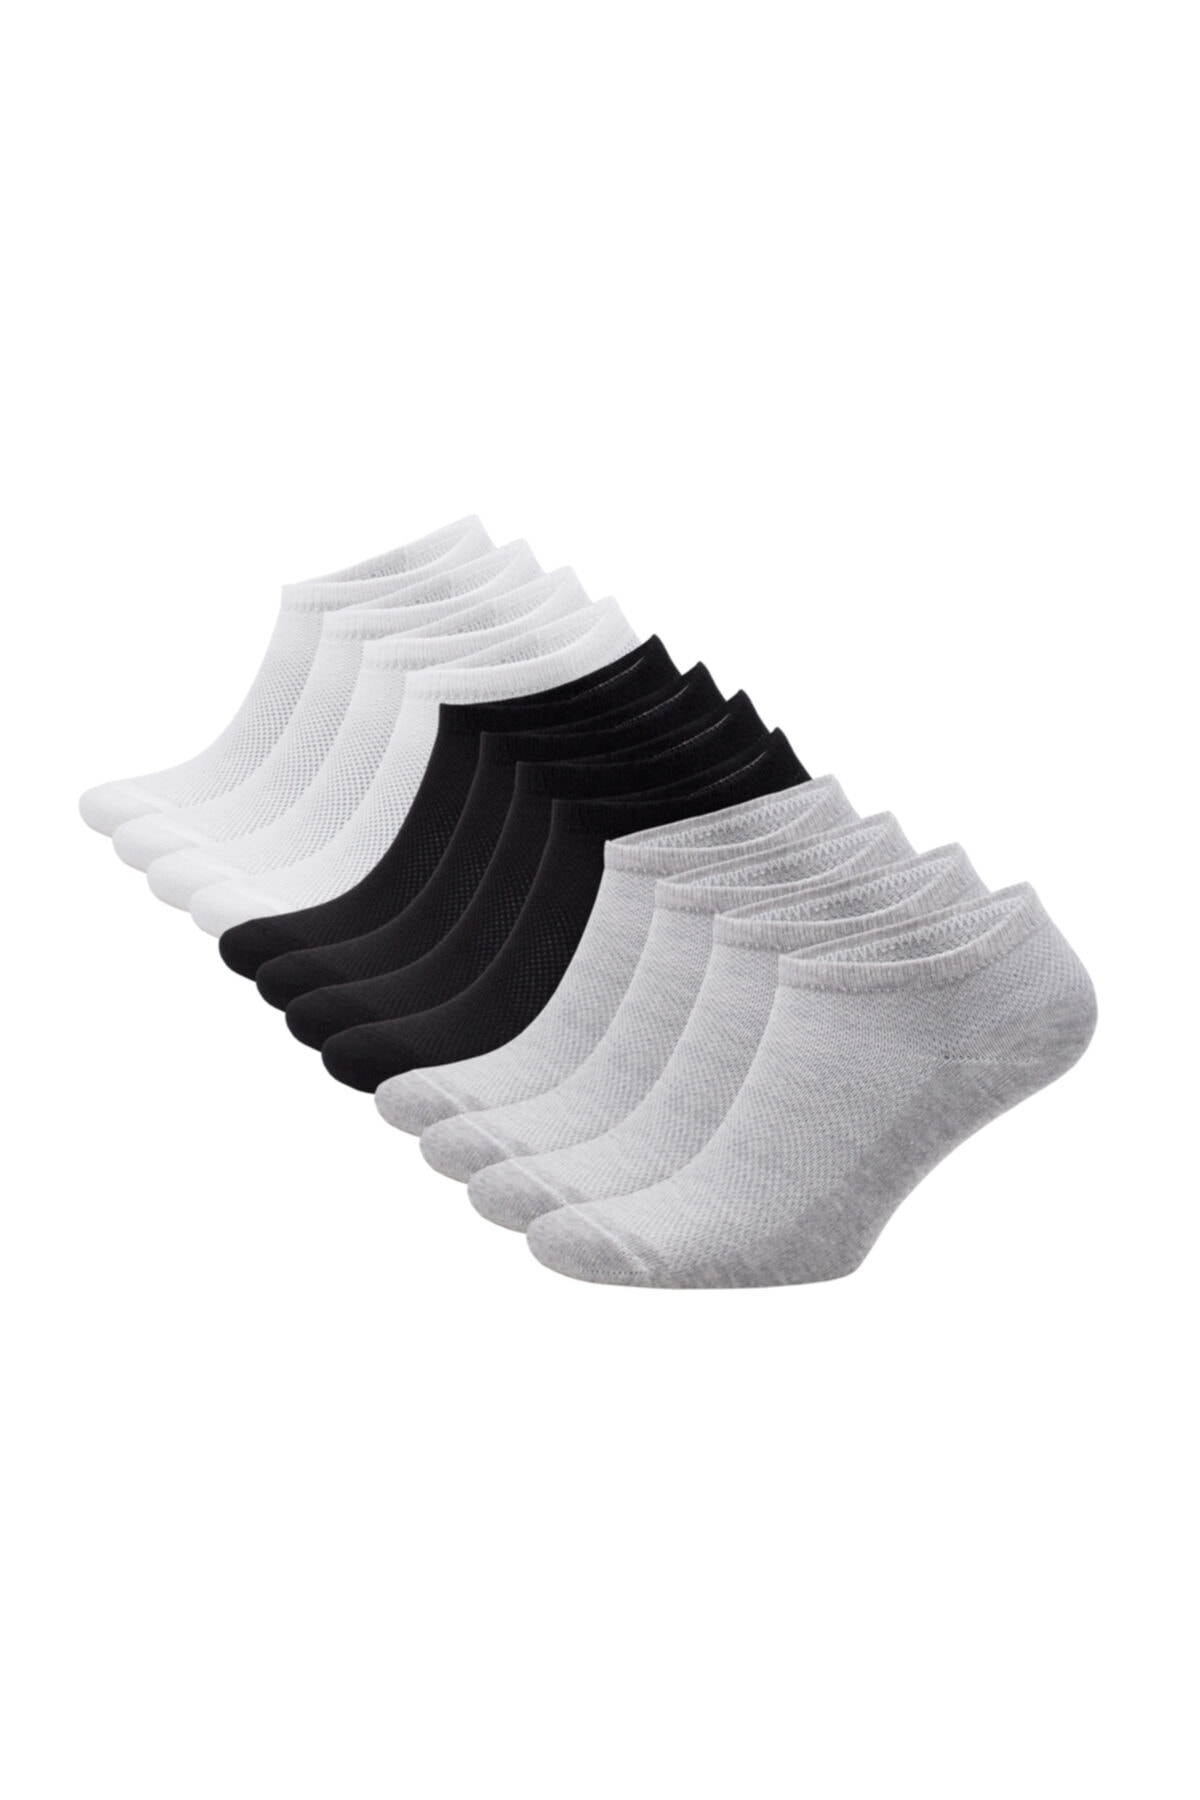 Pearlzon Spor Çorap Kısa Soket Çorap Unisex 12 'li